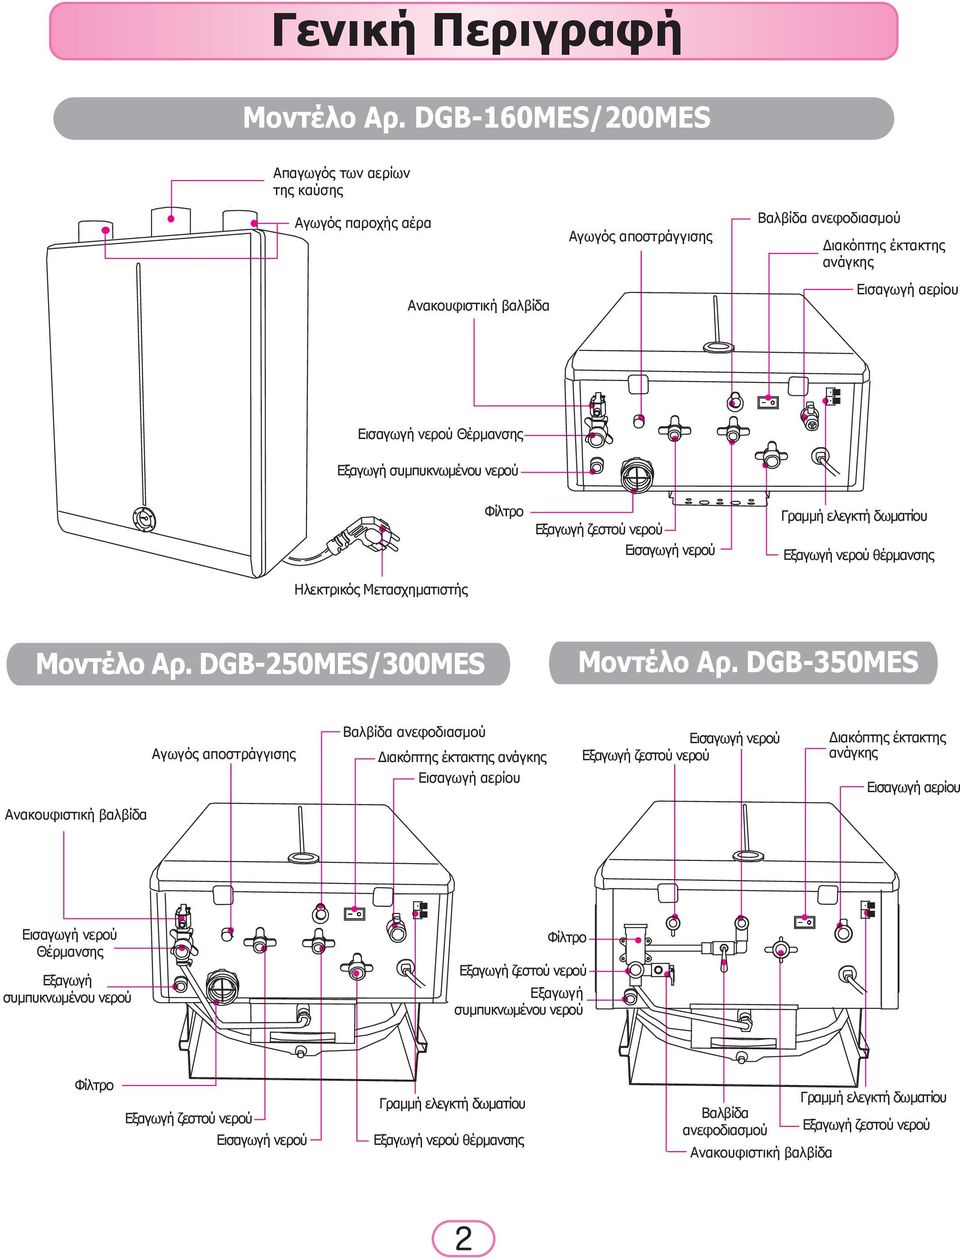 Θέρμανσης Εξαγωγή συμπυκνωμένου νερού Φίλτρο Εξαγωγή ζεστού νερού Εισαγωγή νερού Γραμμή ελεγκτή δωματίου Εξαγωγή νερού θέρμανσης Ηλεκτρικός Μετασχηματιστής Μοντέλο Αρ. DGB-250MES/300MES Μοντέλο Αρ.